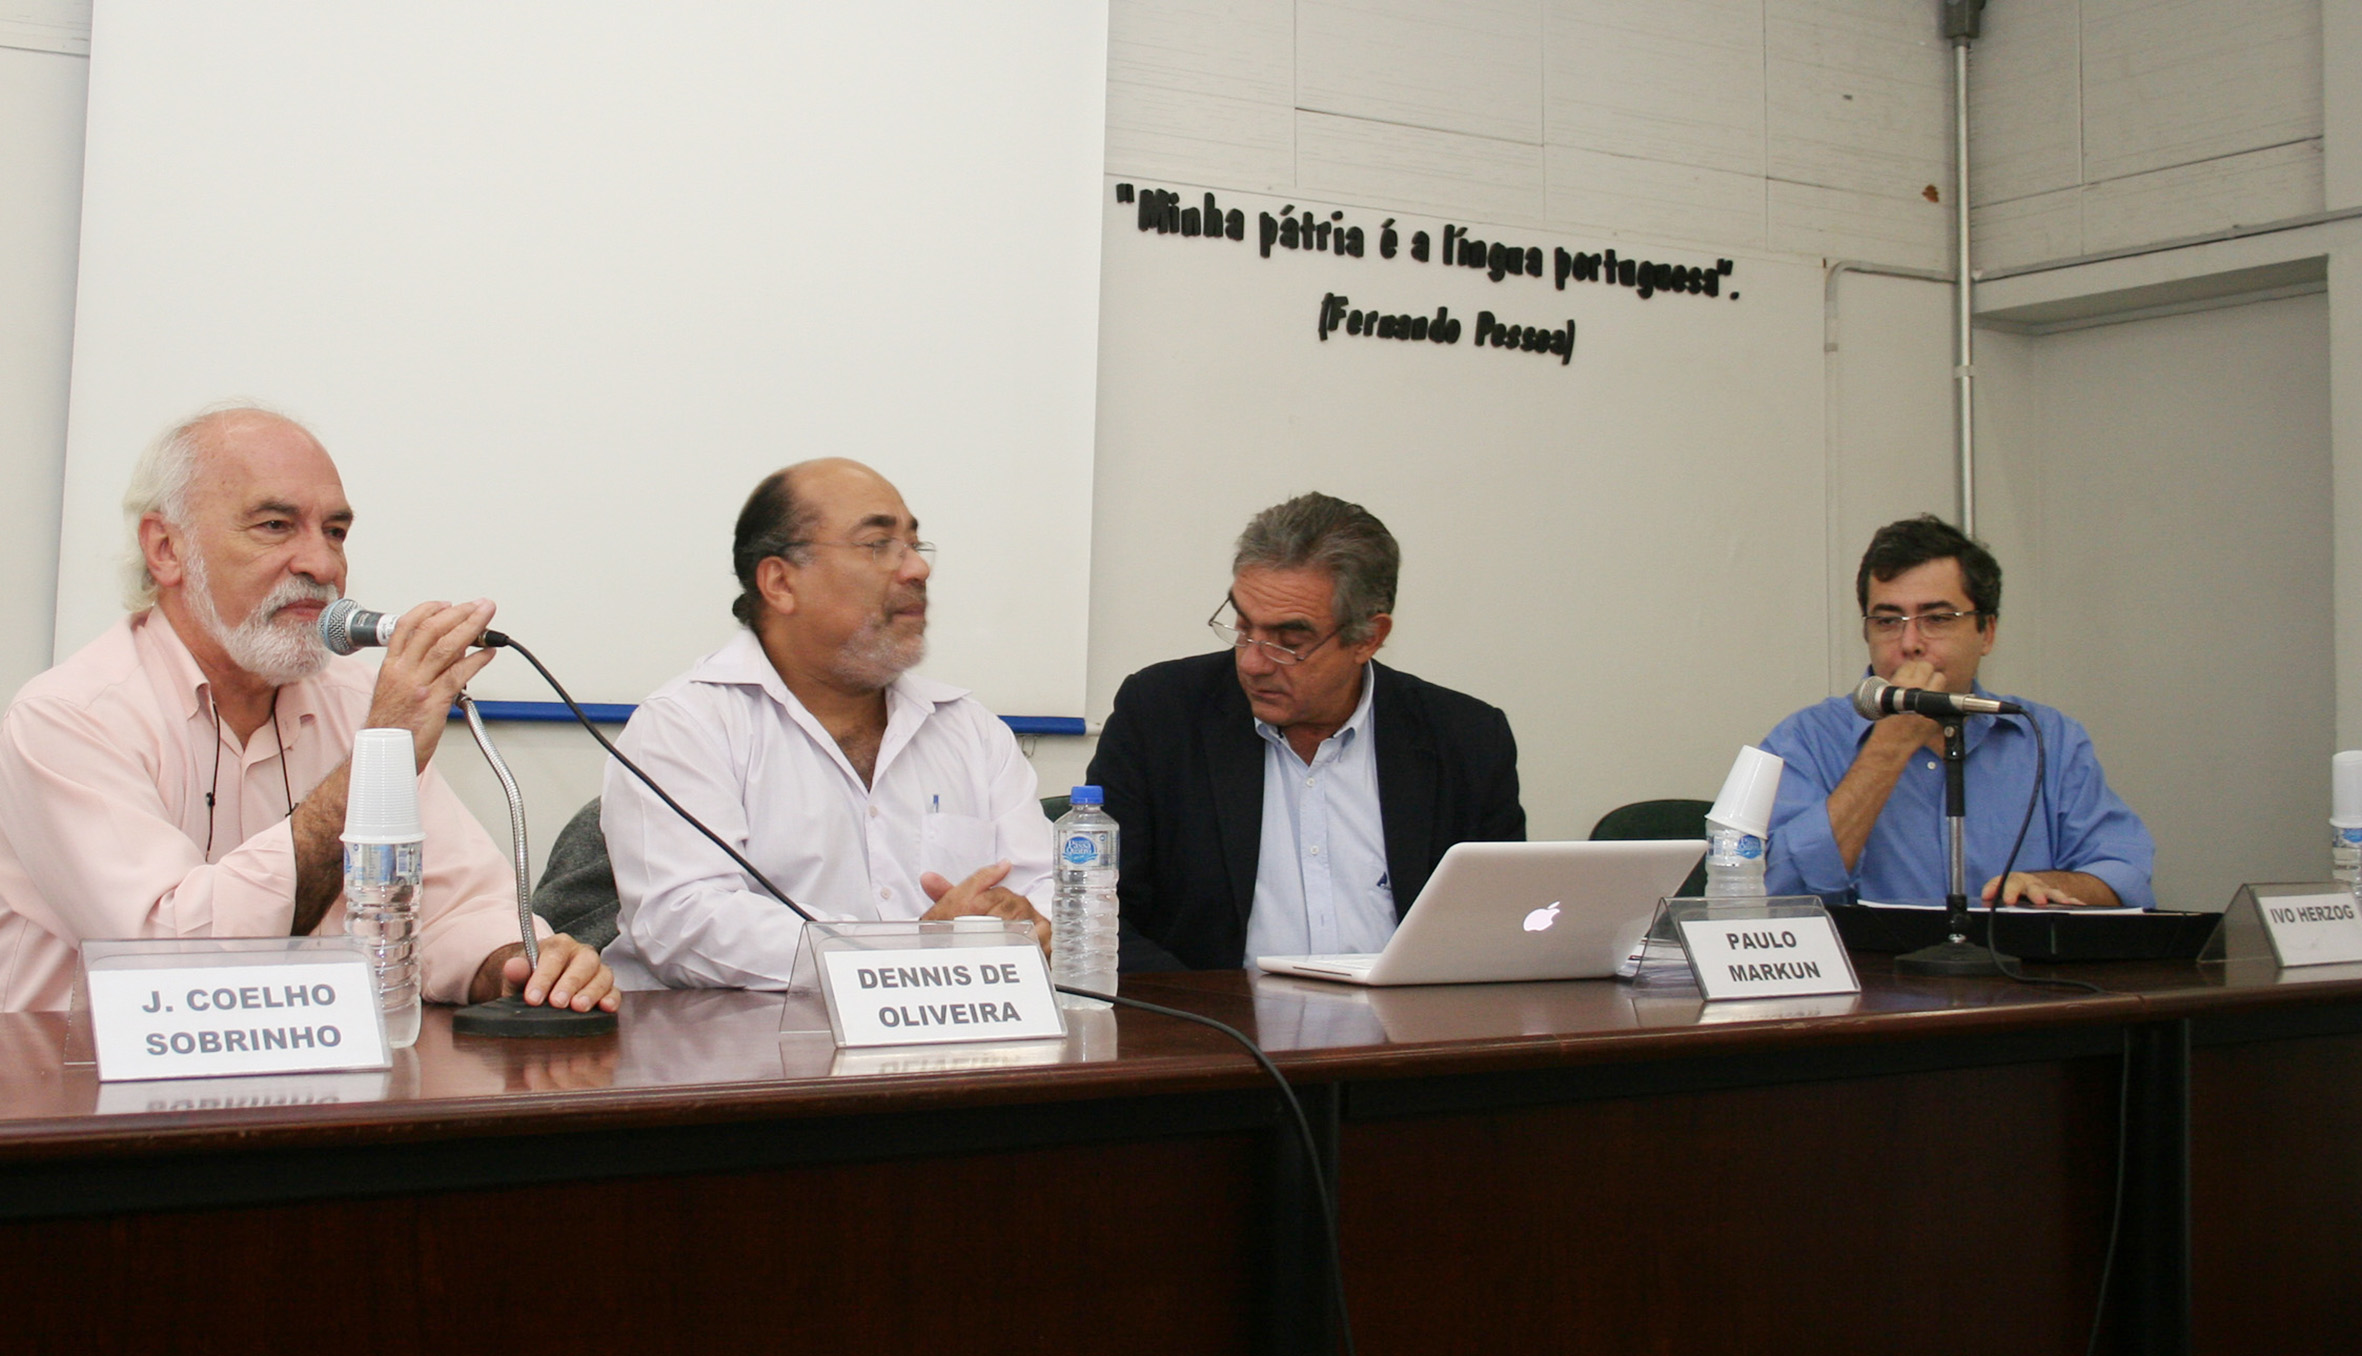 José Coelho Sobrinho, Dennis de Oliveira, Paulo Markun e Ivo Herzog